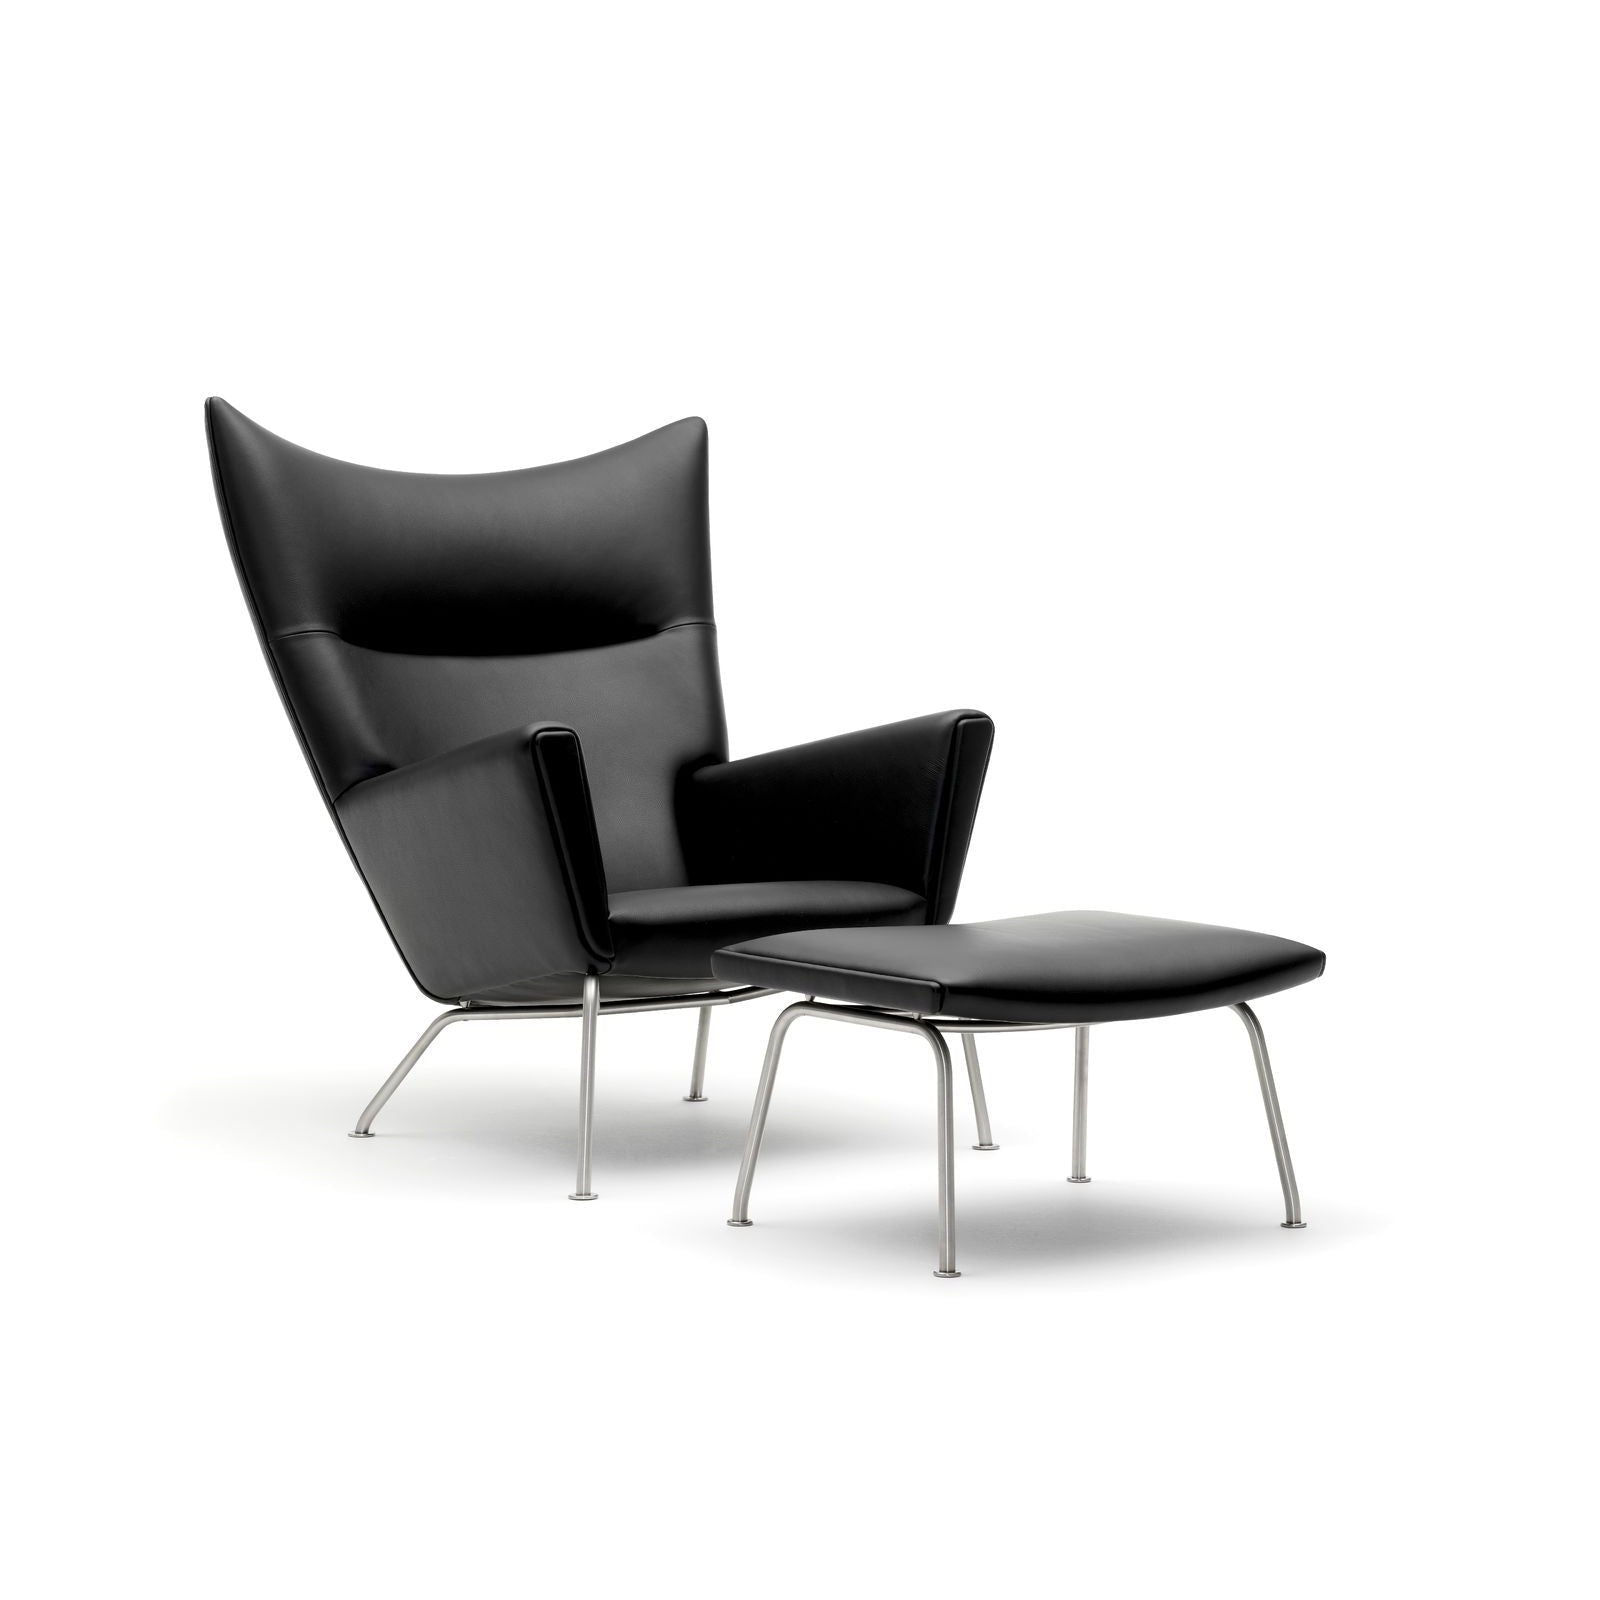 Křídlá židle Carl Hansen CH445, černá ocel /světle šedá látka